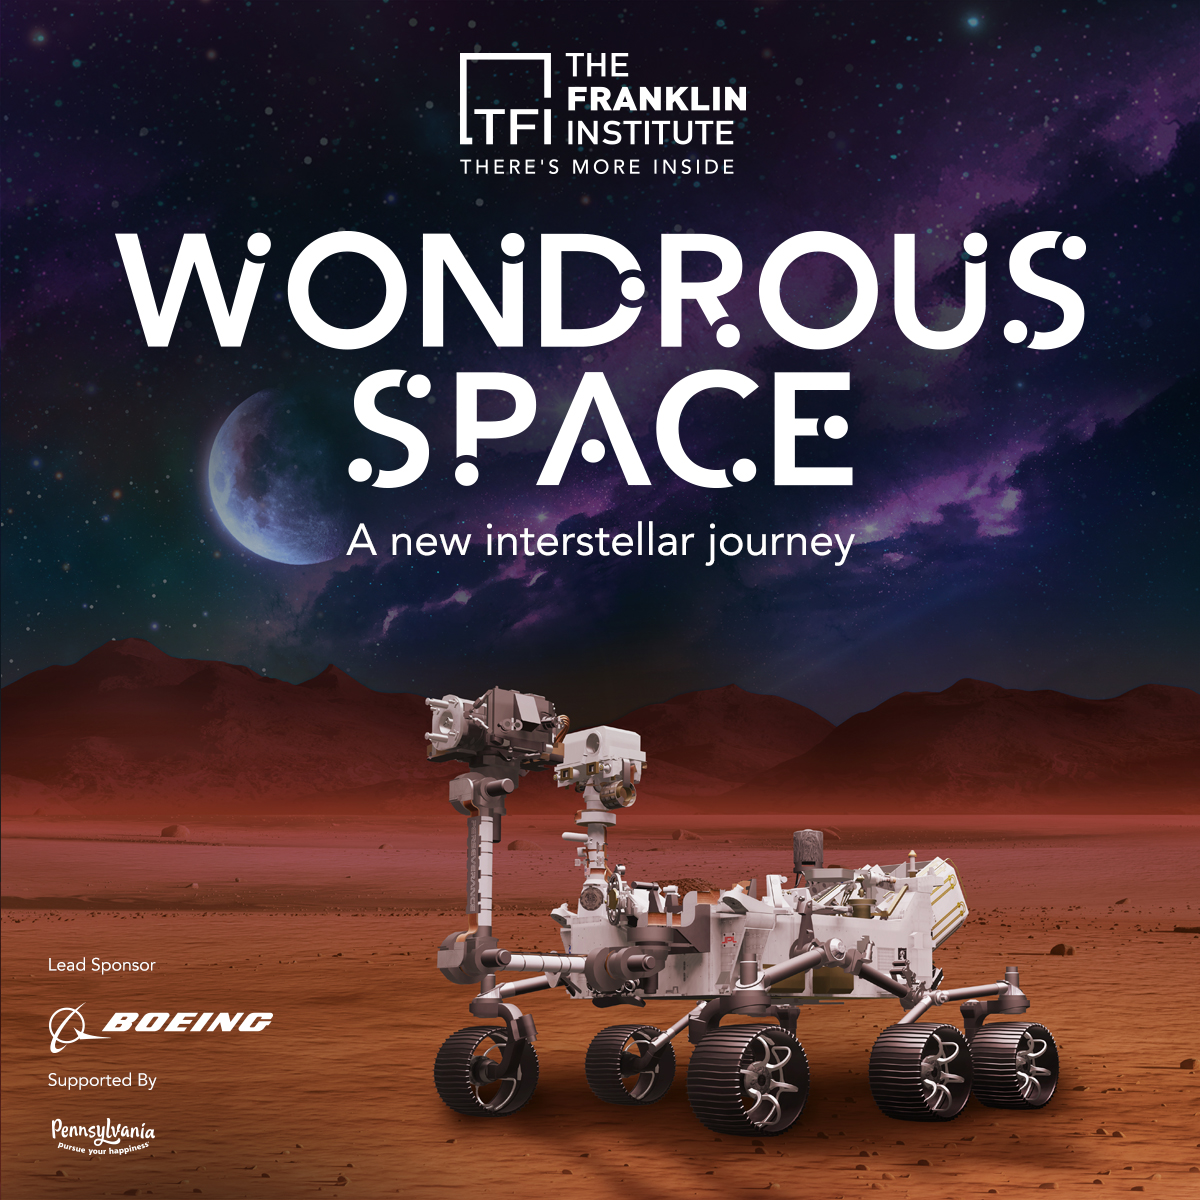 TFI Wondrous Space Ad